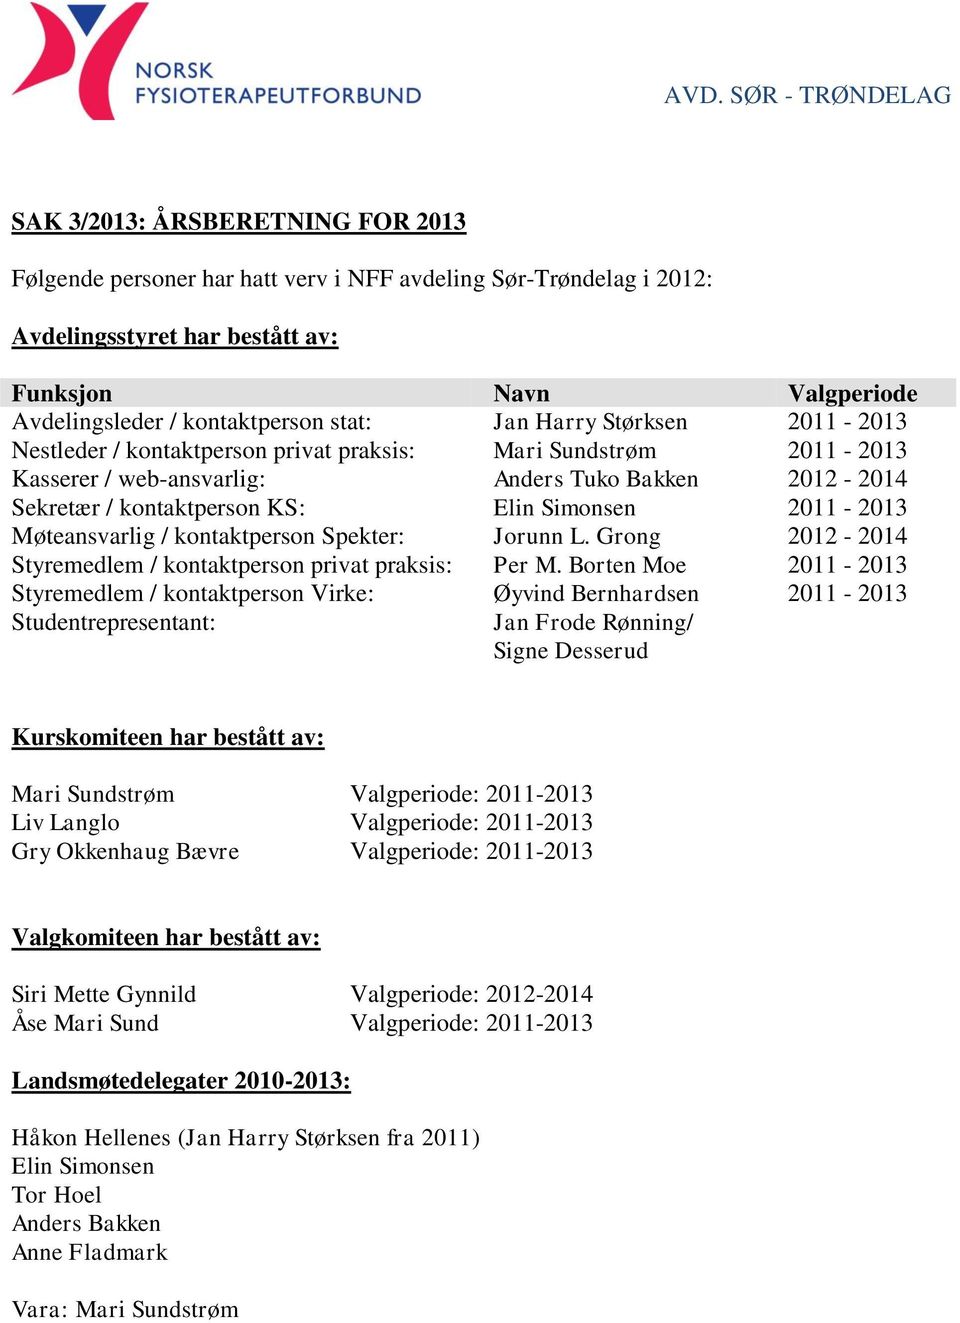 2011-2013 Møteansvarlig / kontaktperson Spekter: Jorunn L. Grong 2012-2014 Styremedlem / kontaktperson privat praksis: Per M.